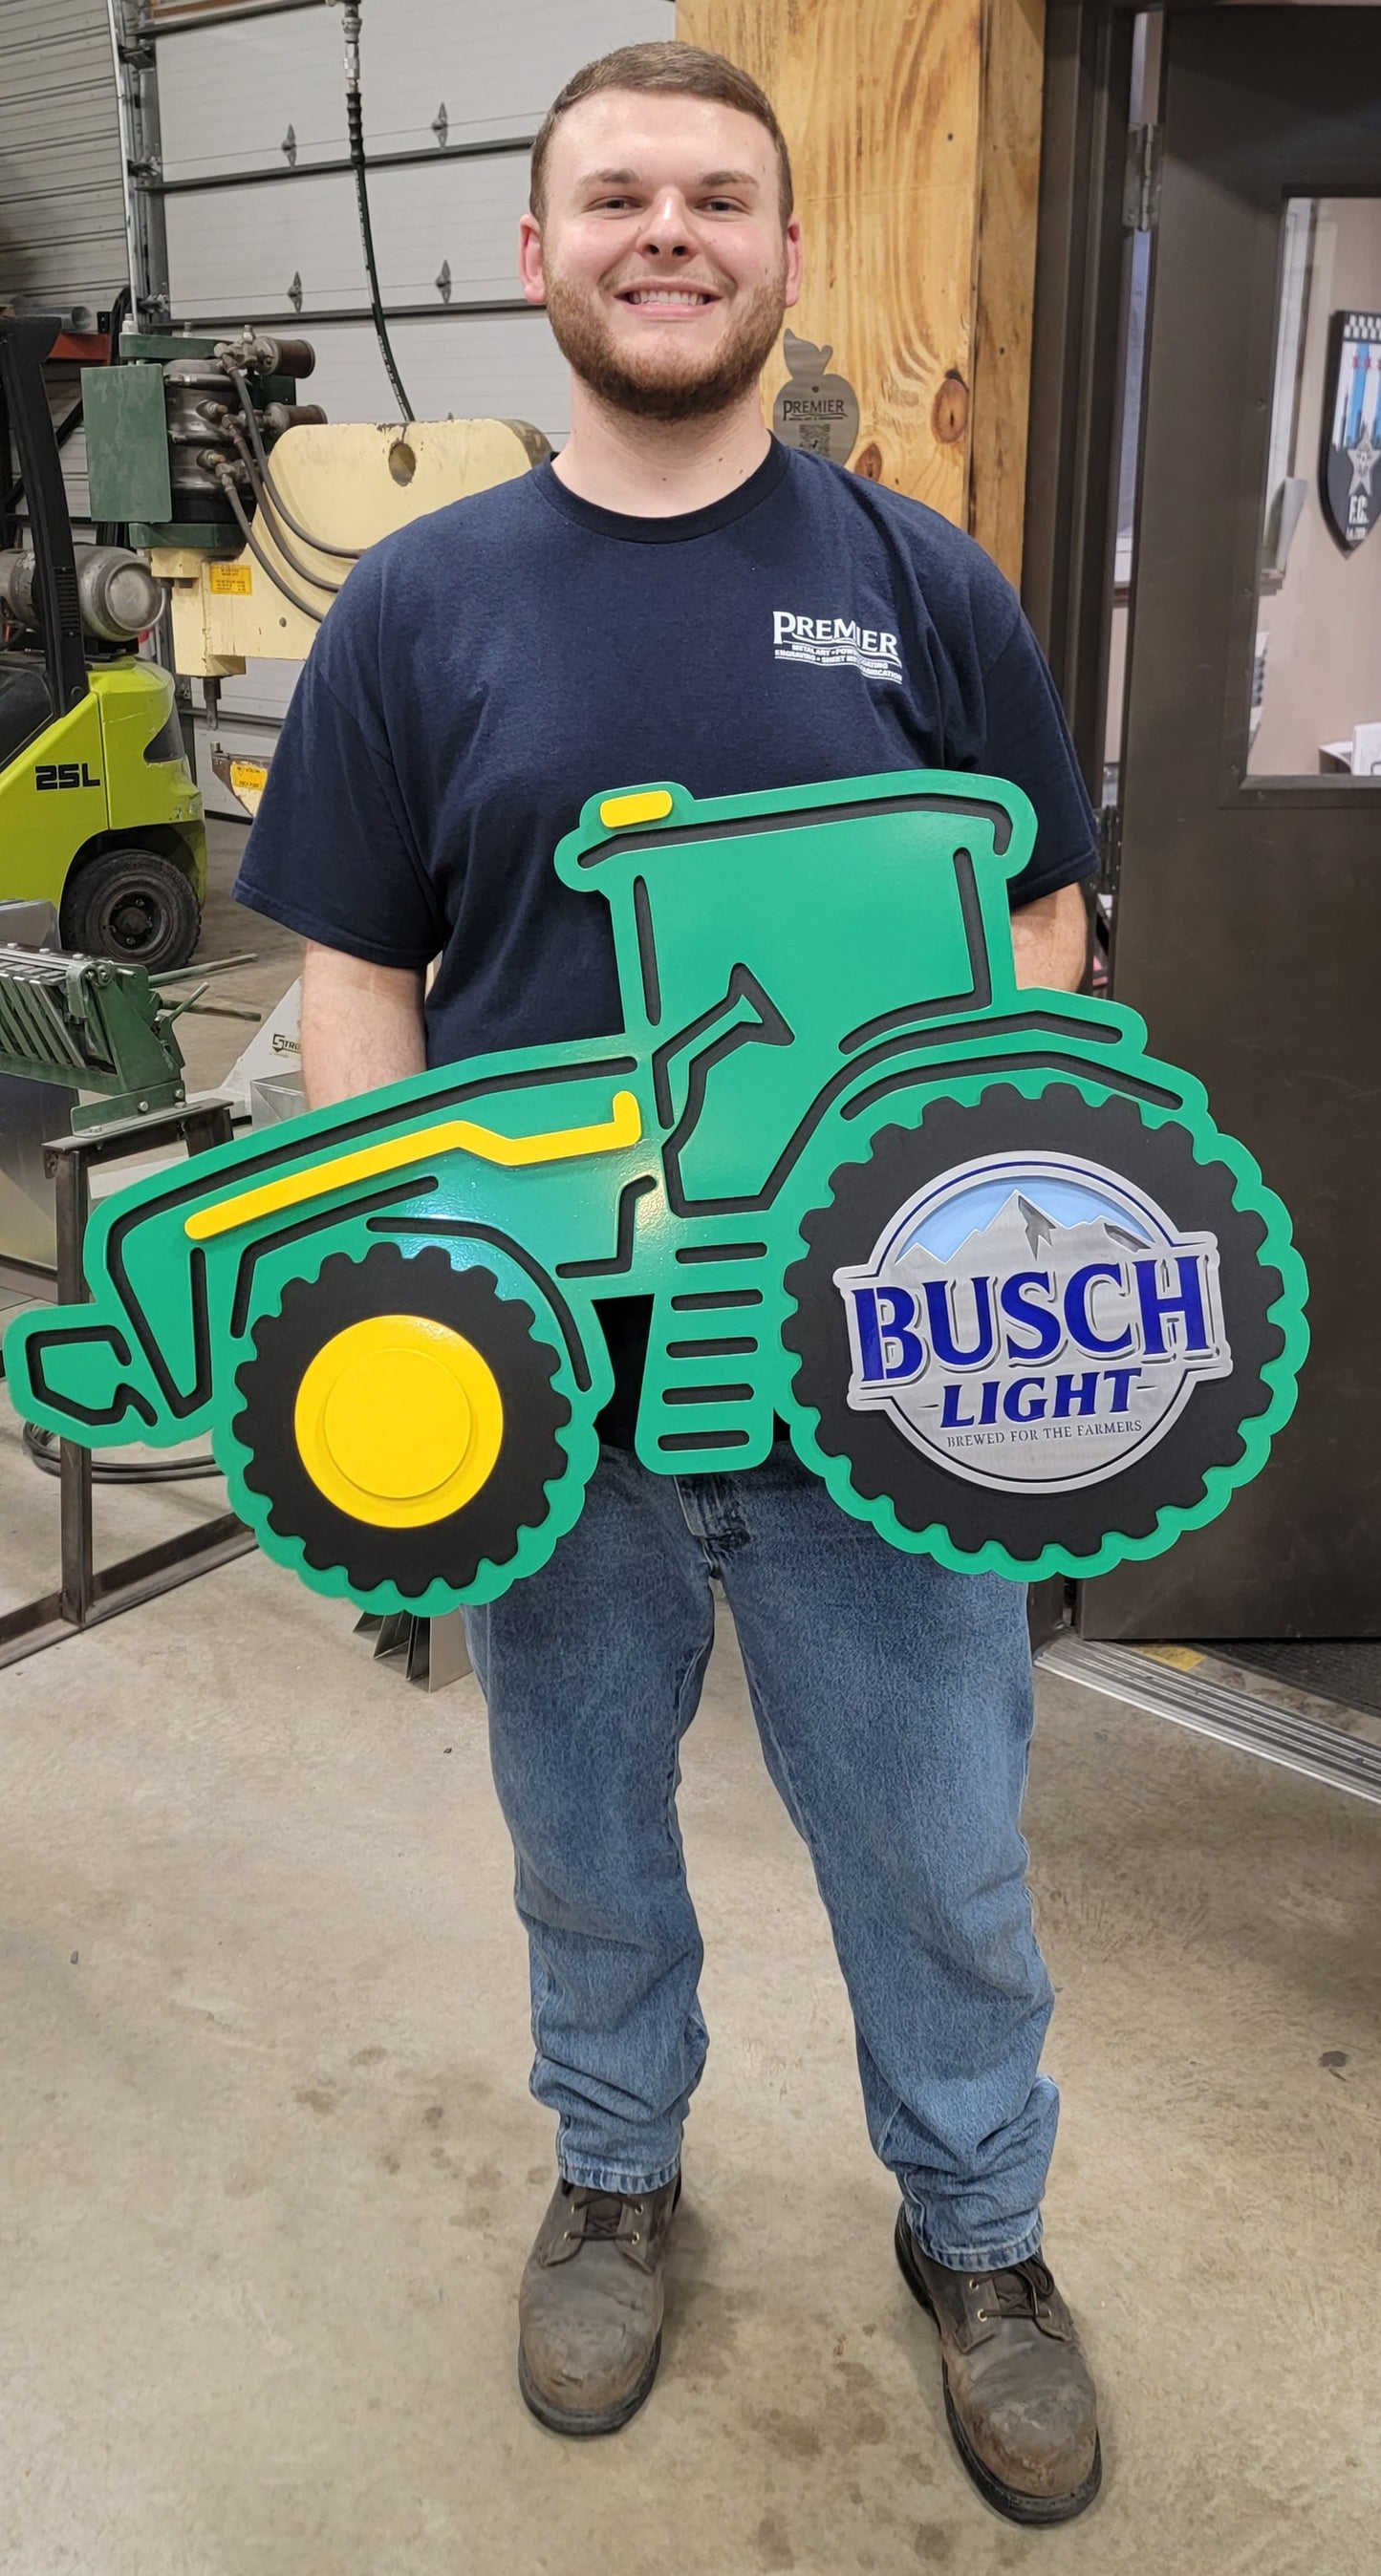 Busch Light Tractor